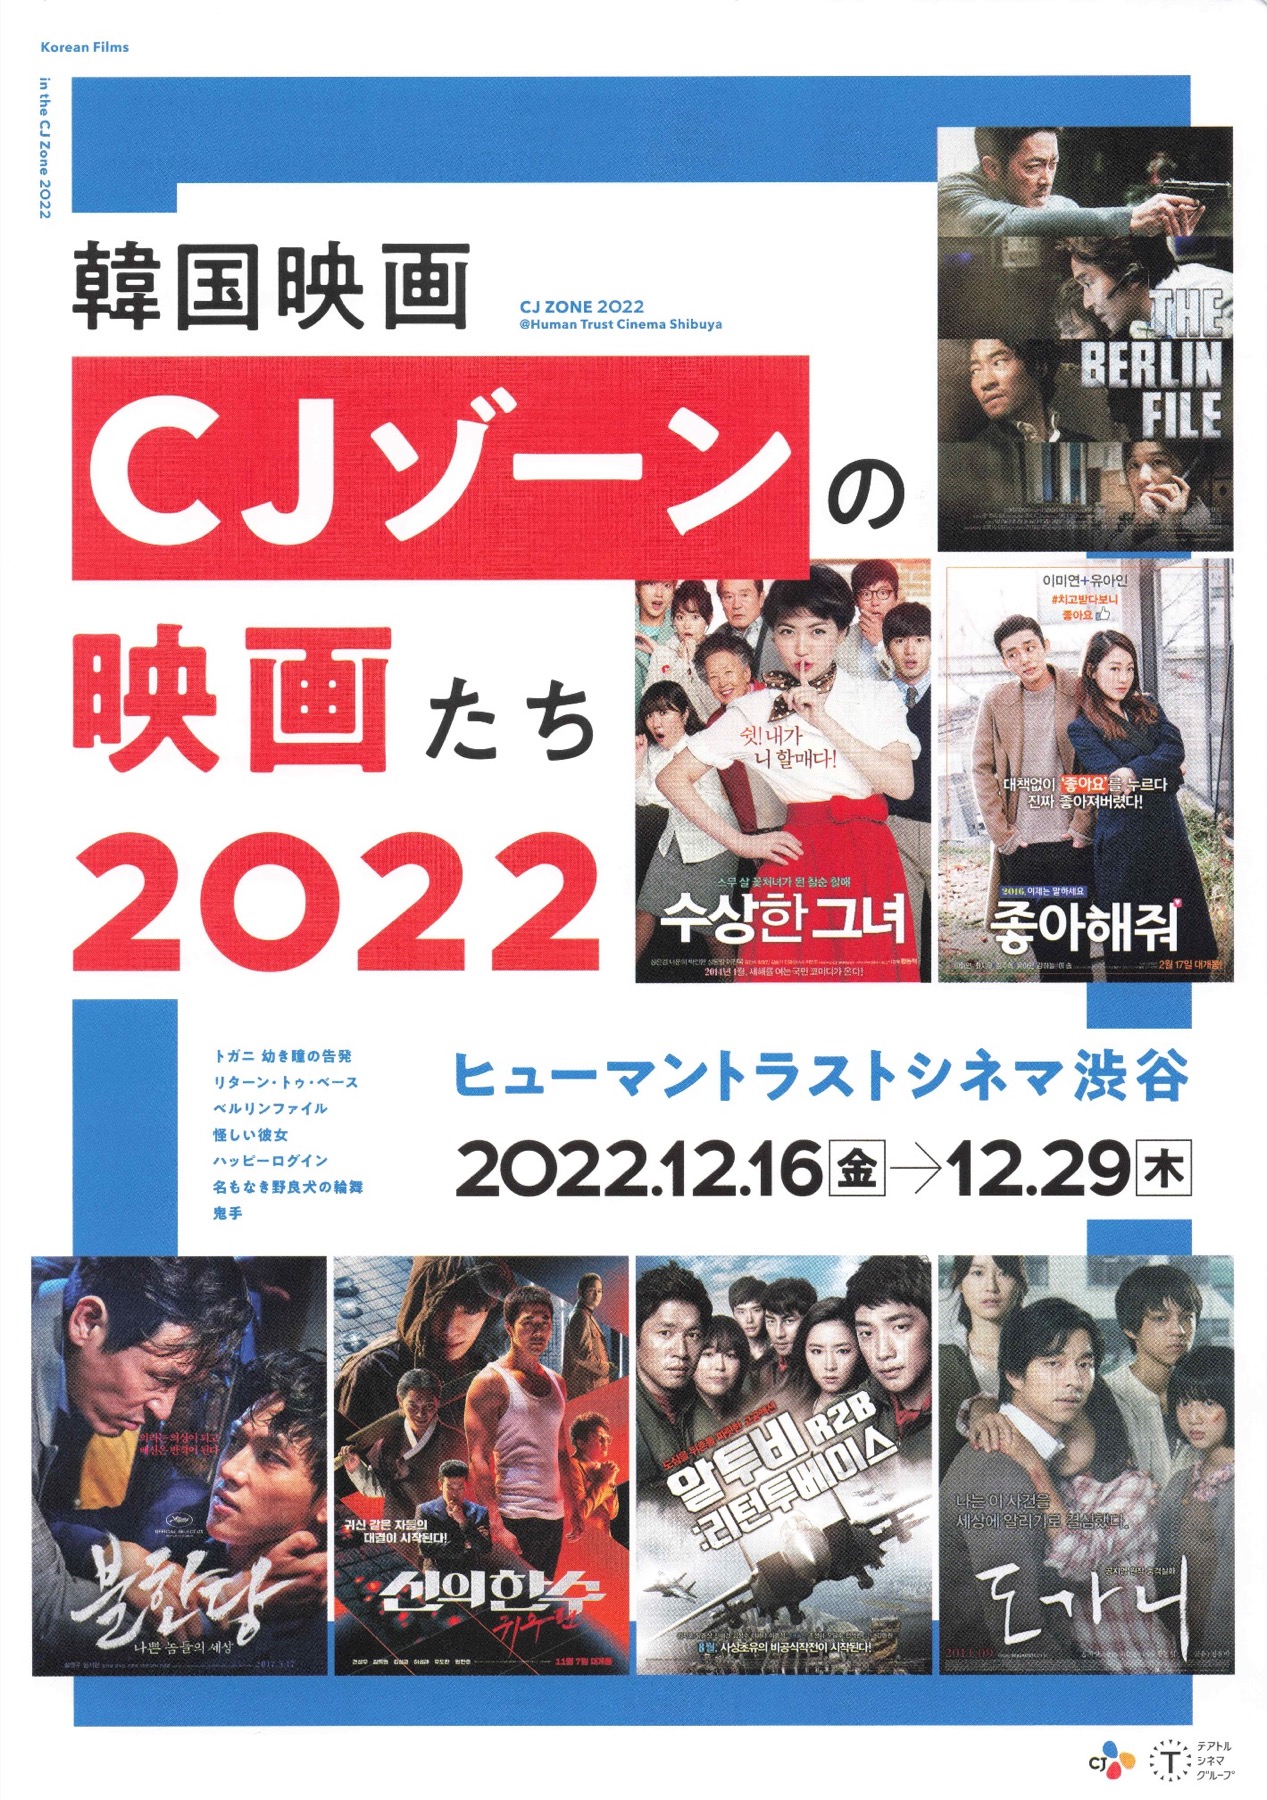 韓国映画 CJゾーンの映画たち 2022